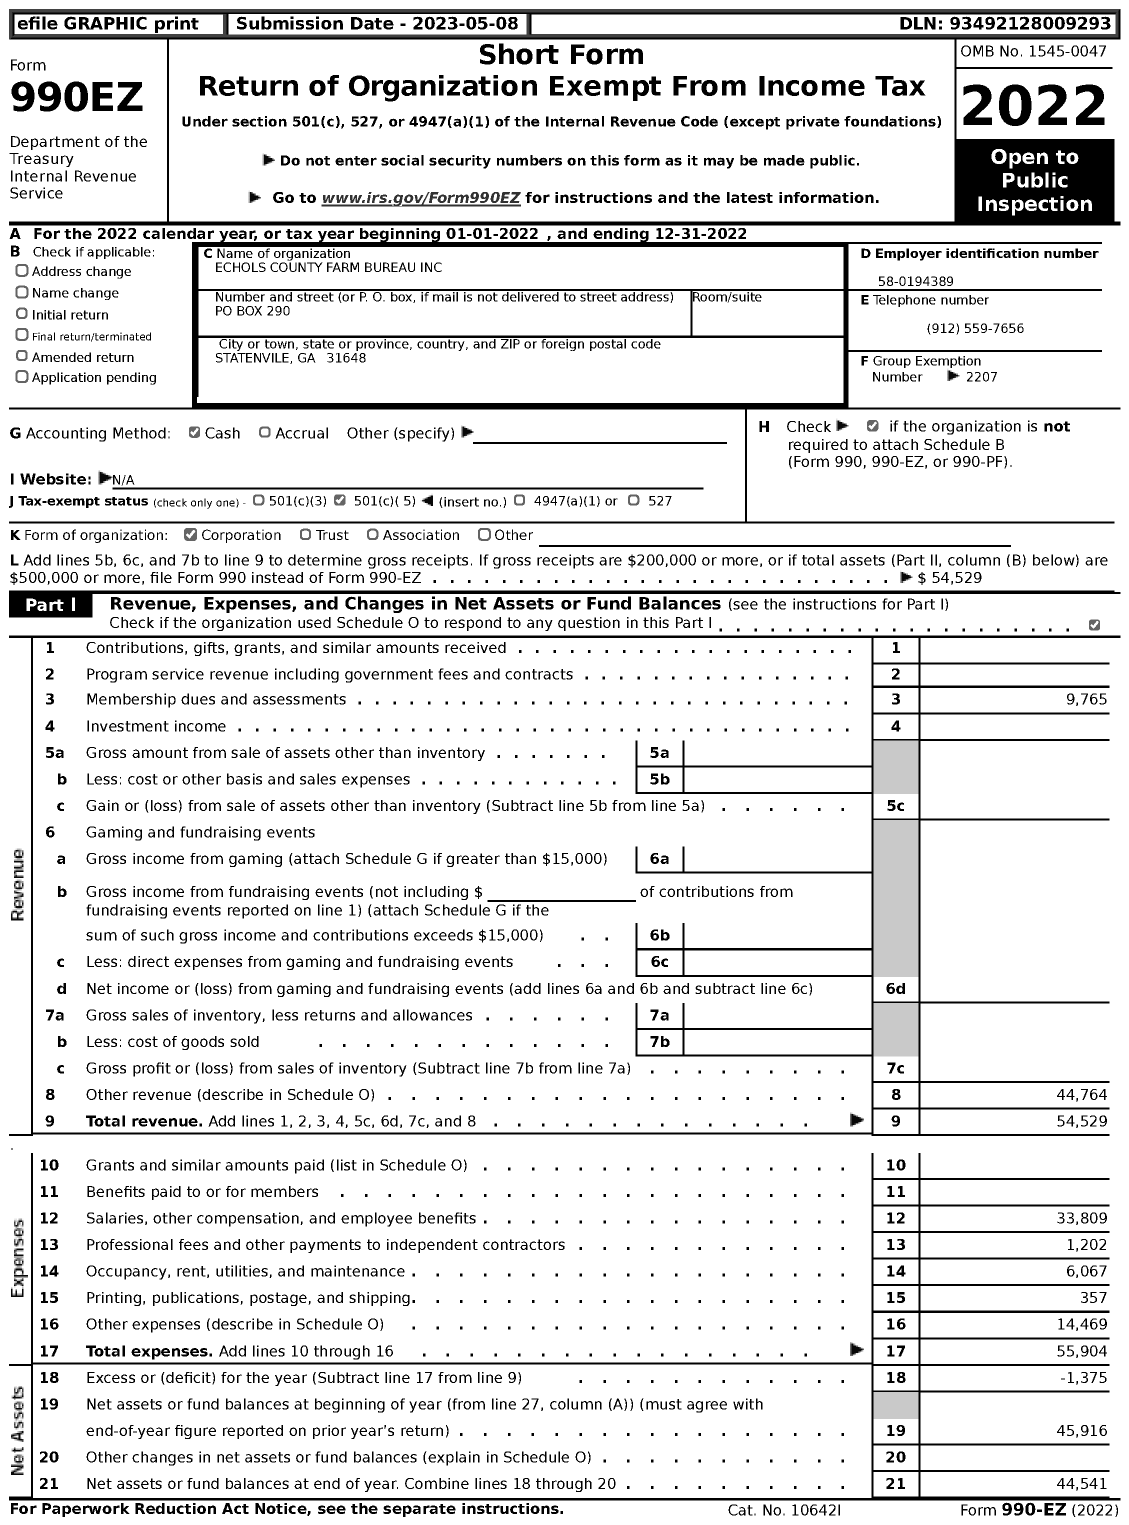 Image of first page of 2022 Form 990EZ for Georgia Farm Bureau Federation - Echols County Farm Bureau